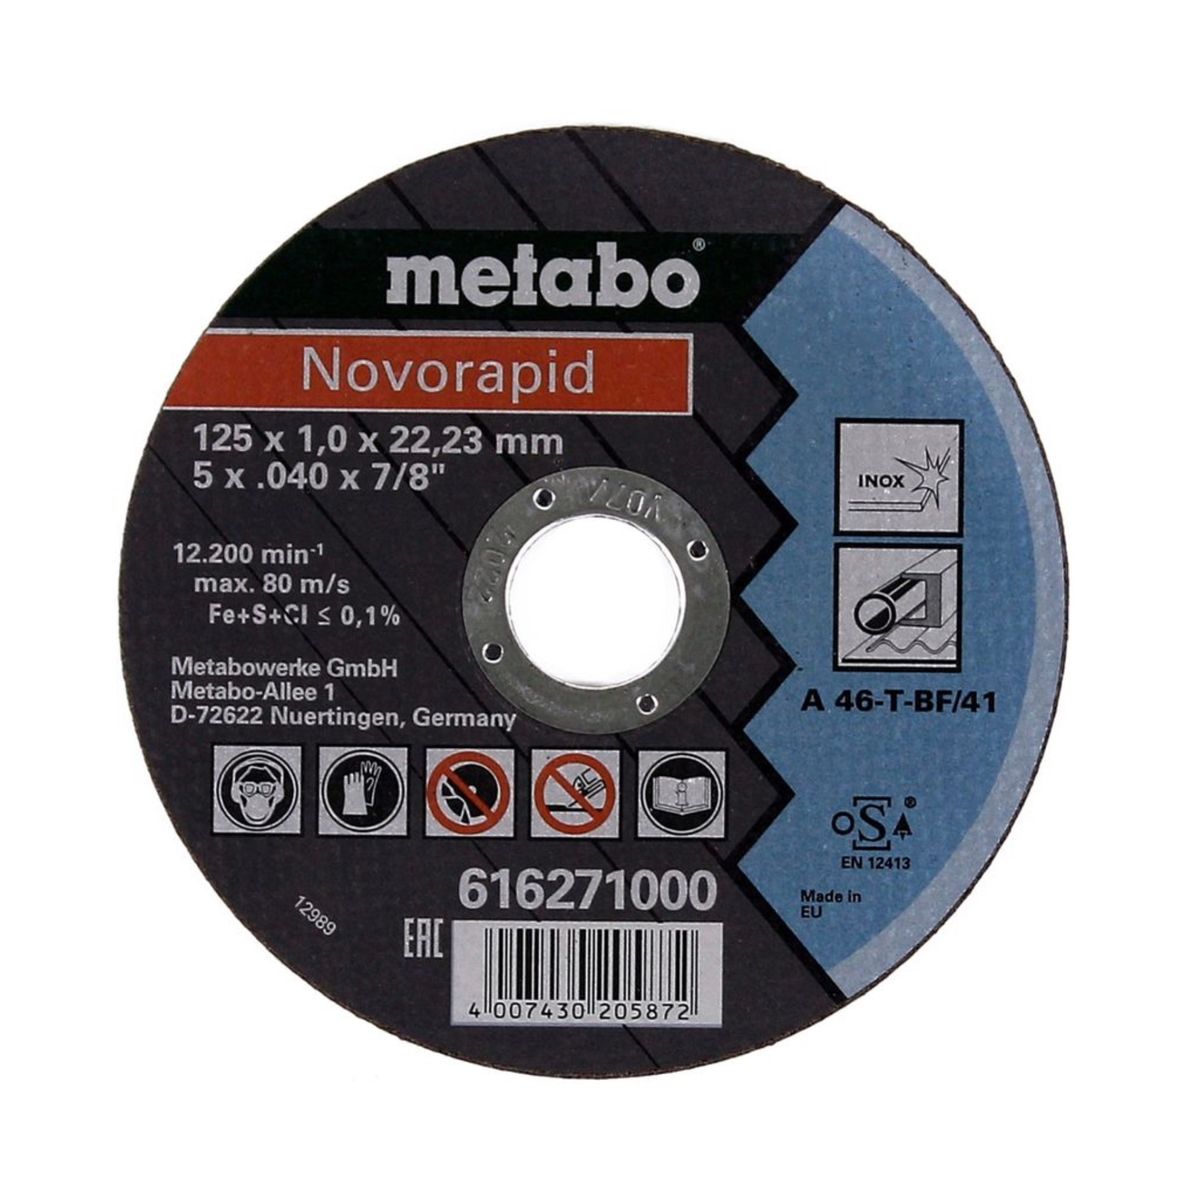 Metabo WEV 850-125 Winkelschleifer 850 W 125 mm ( 603611000 ) + 26x Trennscheibe + Schnellspannmutter